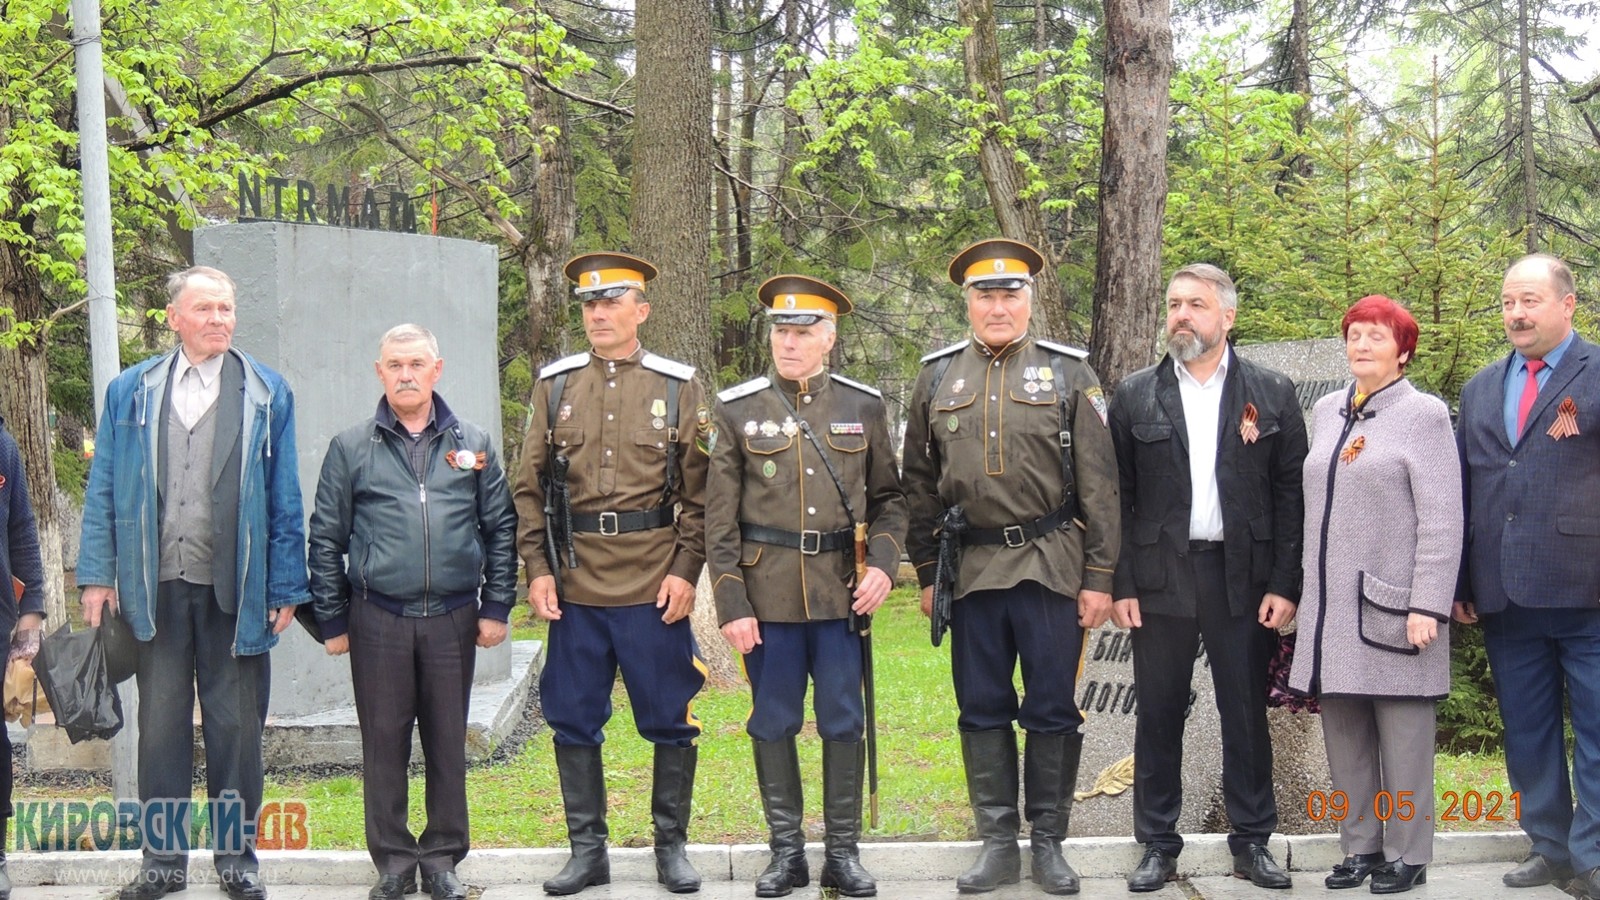 9 мая в посёлке Кировский прошли праздничные мероприятия, посвященные 76-й годовщине Победы в Великой Отечественной войне